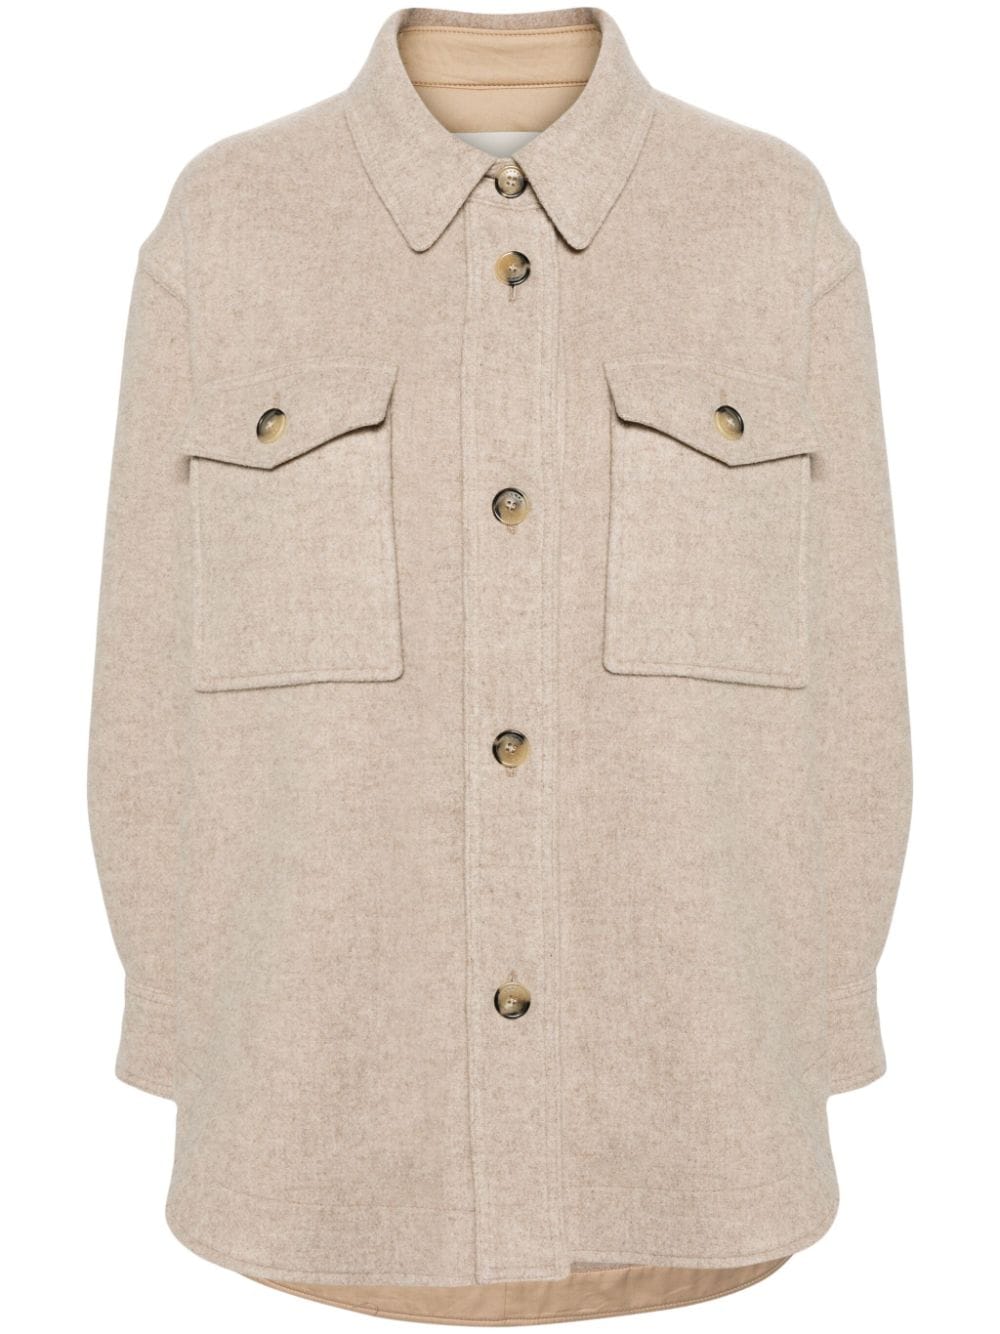 Harveli button-up brushed coat<BR/><BR/><BR/>